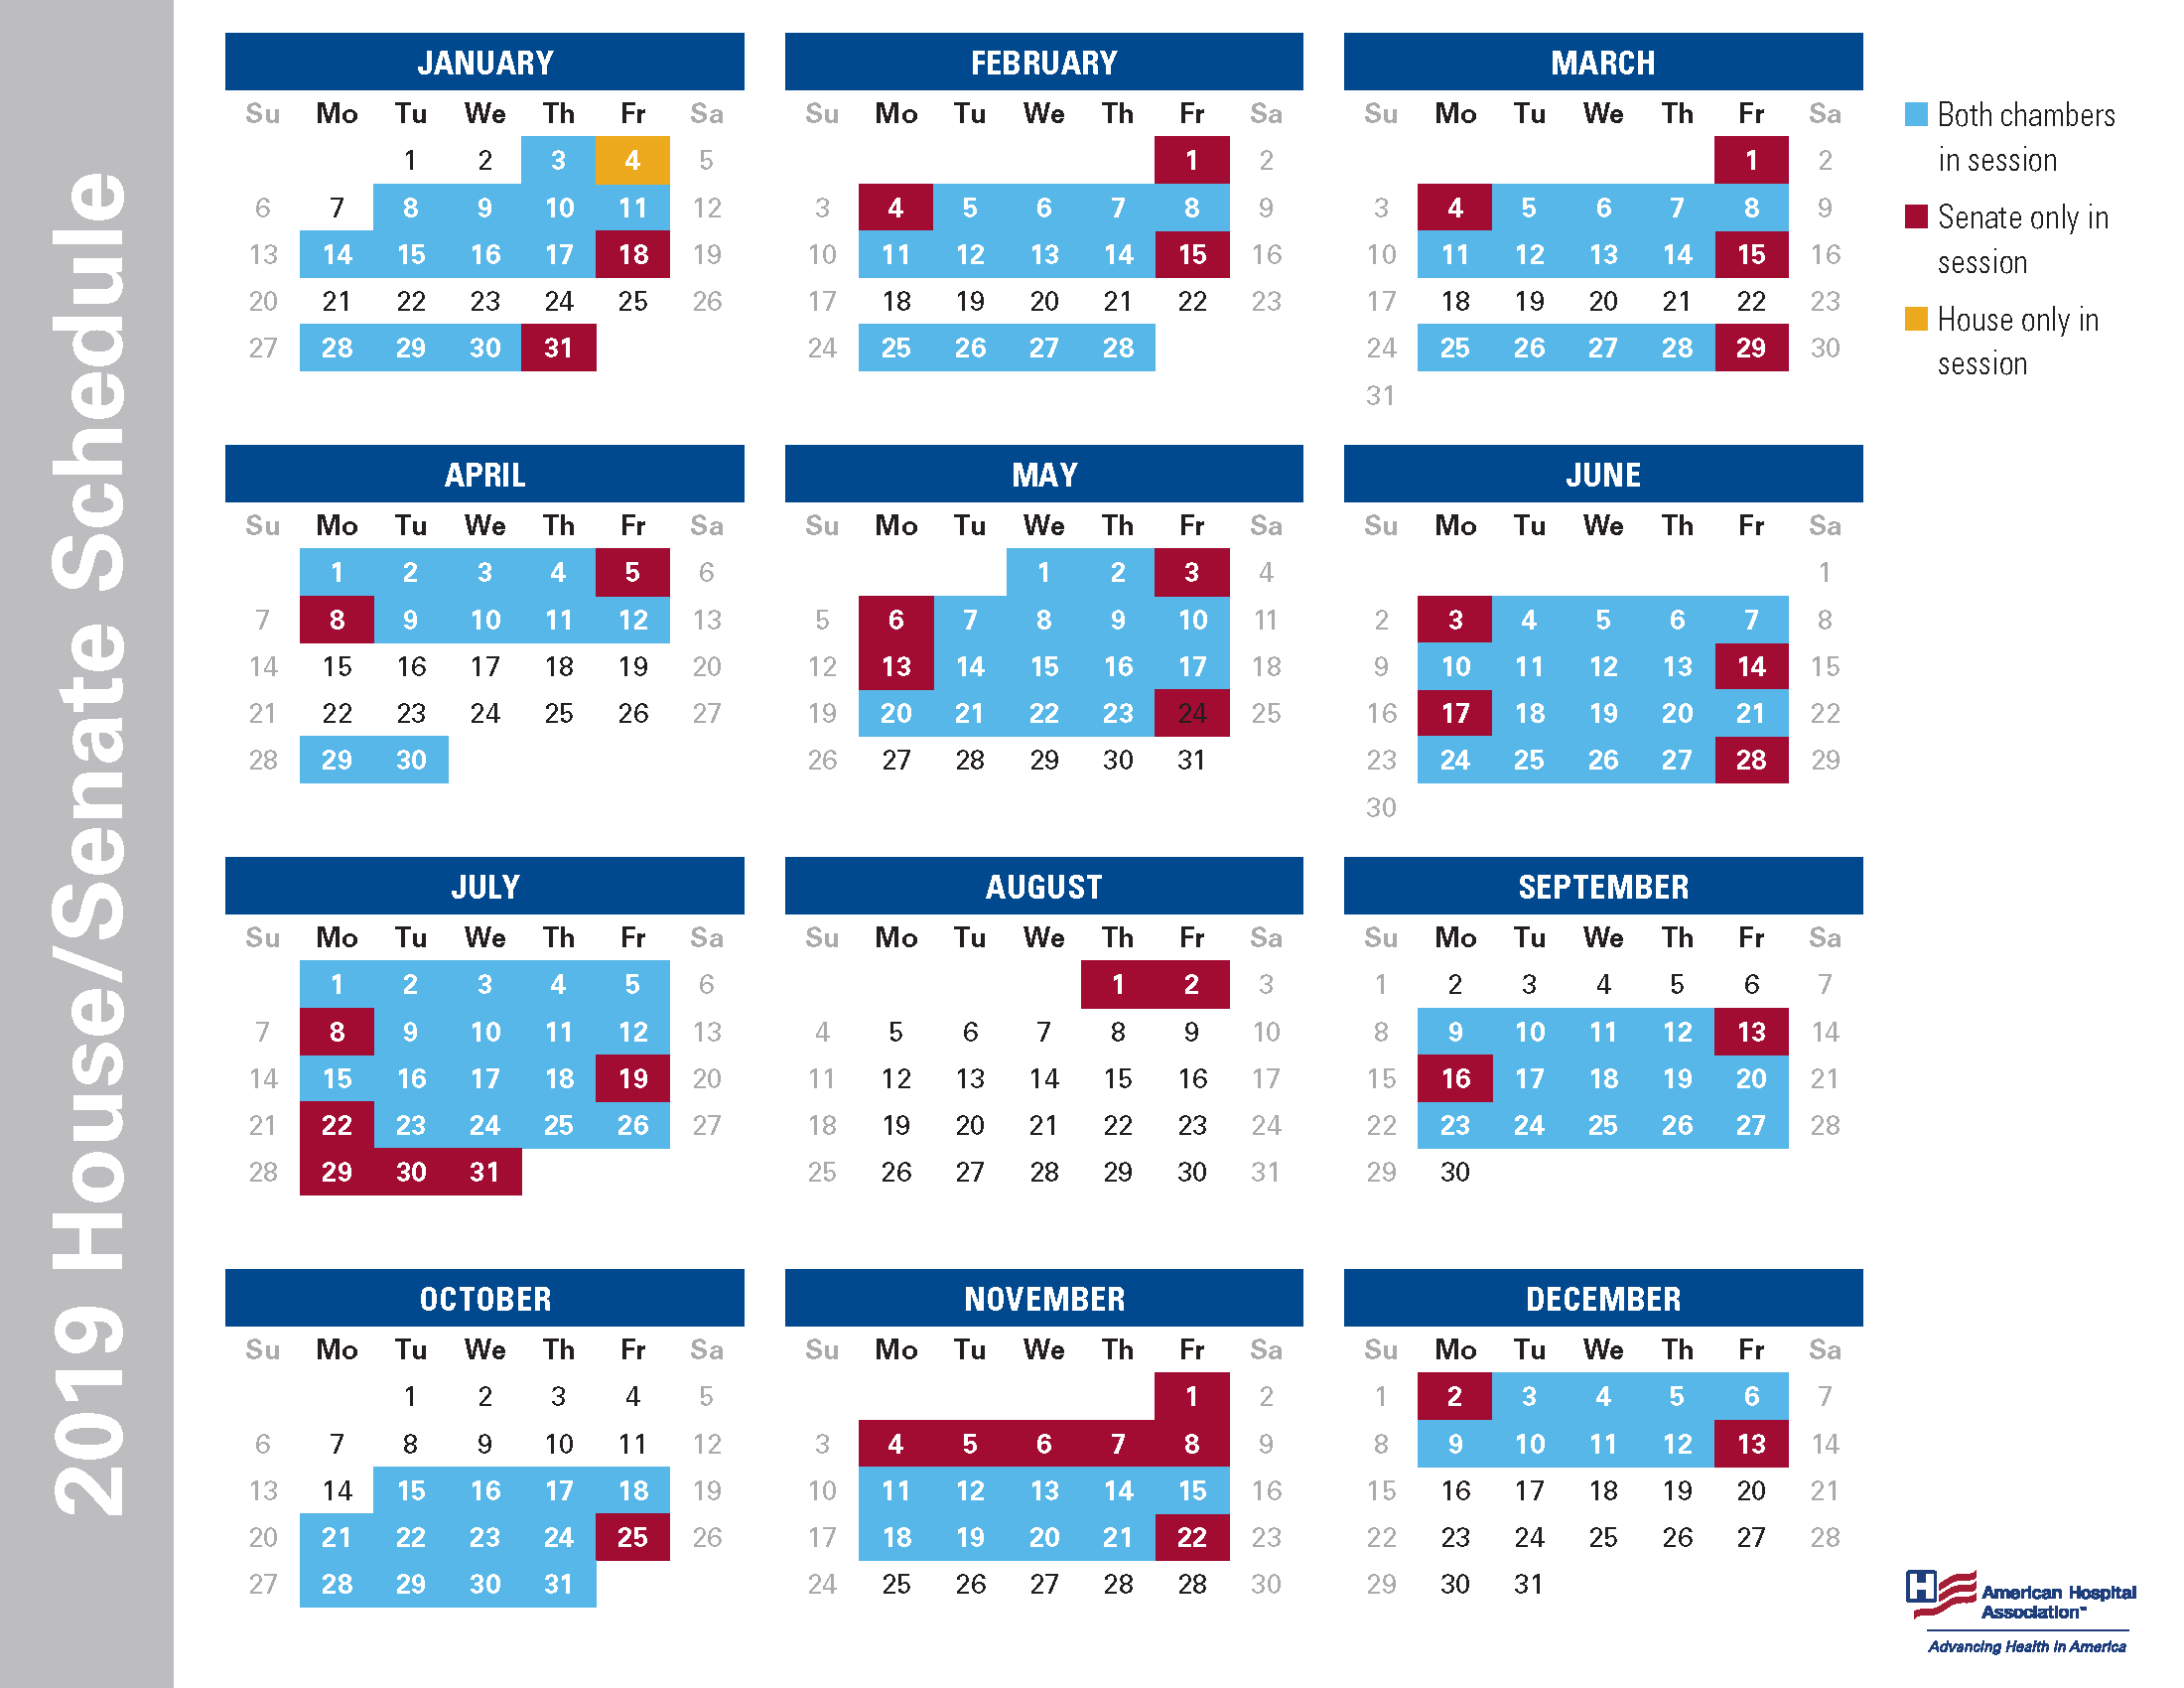 2019 House/Senate Schedule